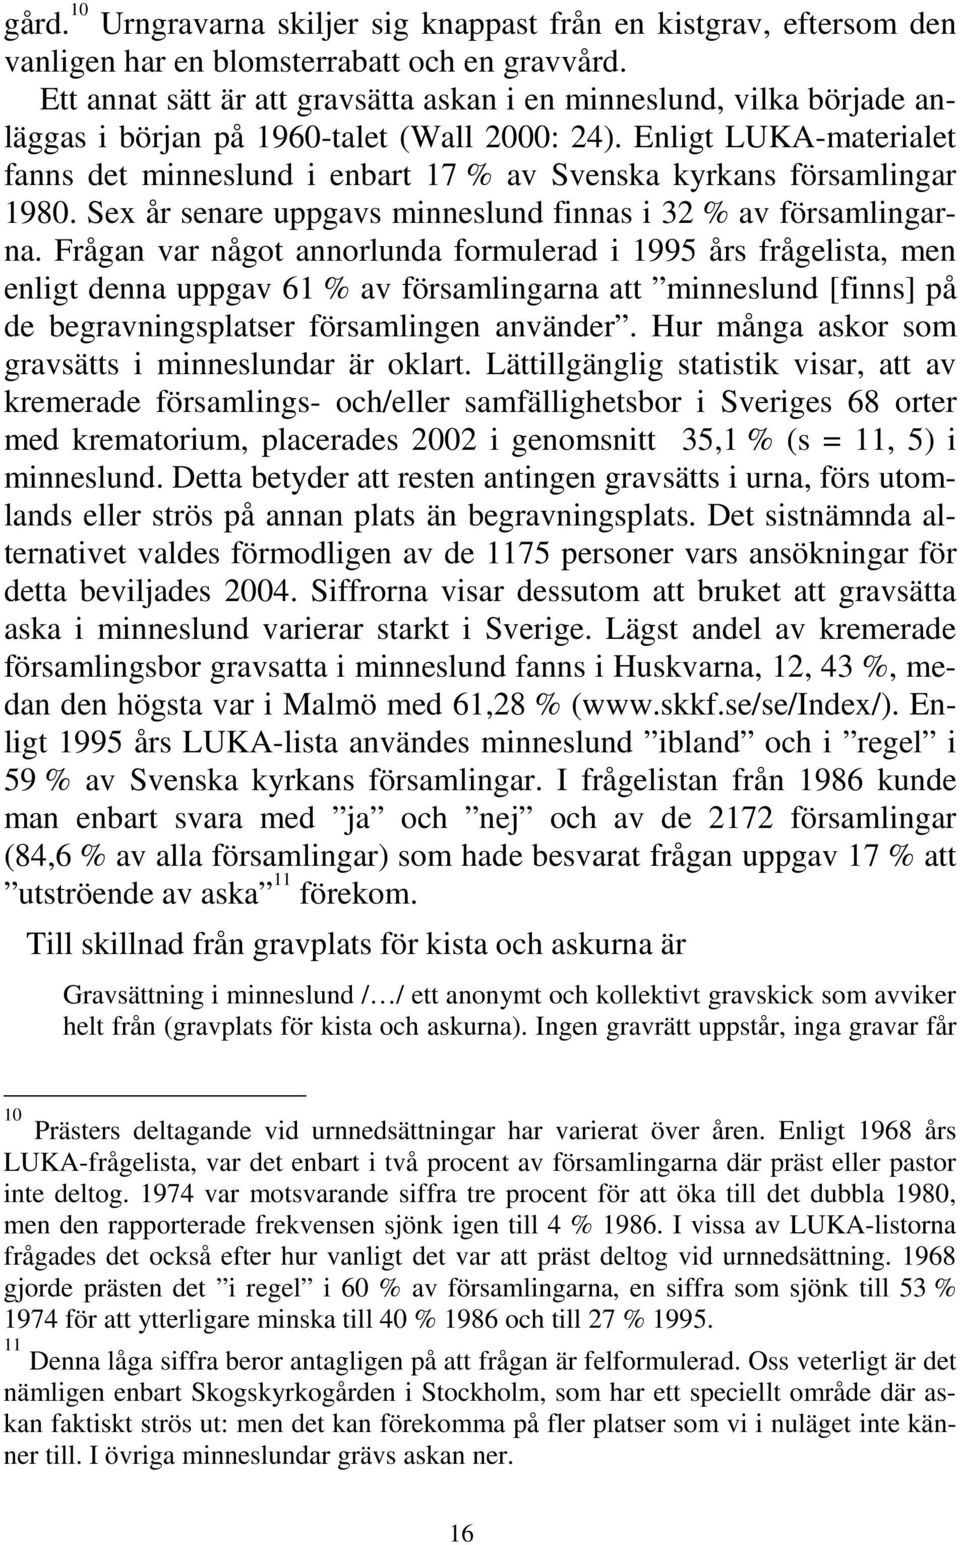 Enligt LUKA-materialet fanns det minneslund i enbart 17 % av Svenska kyrkans församlingar 1980. Sex år senare uppgavs minneslund finnas i 32 % av församlingarna.